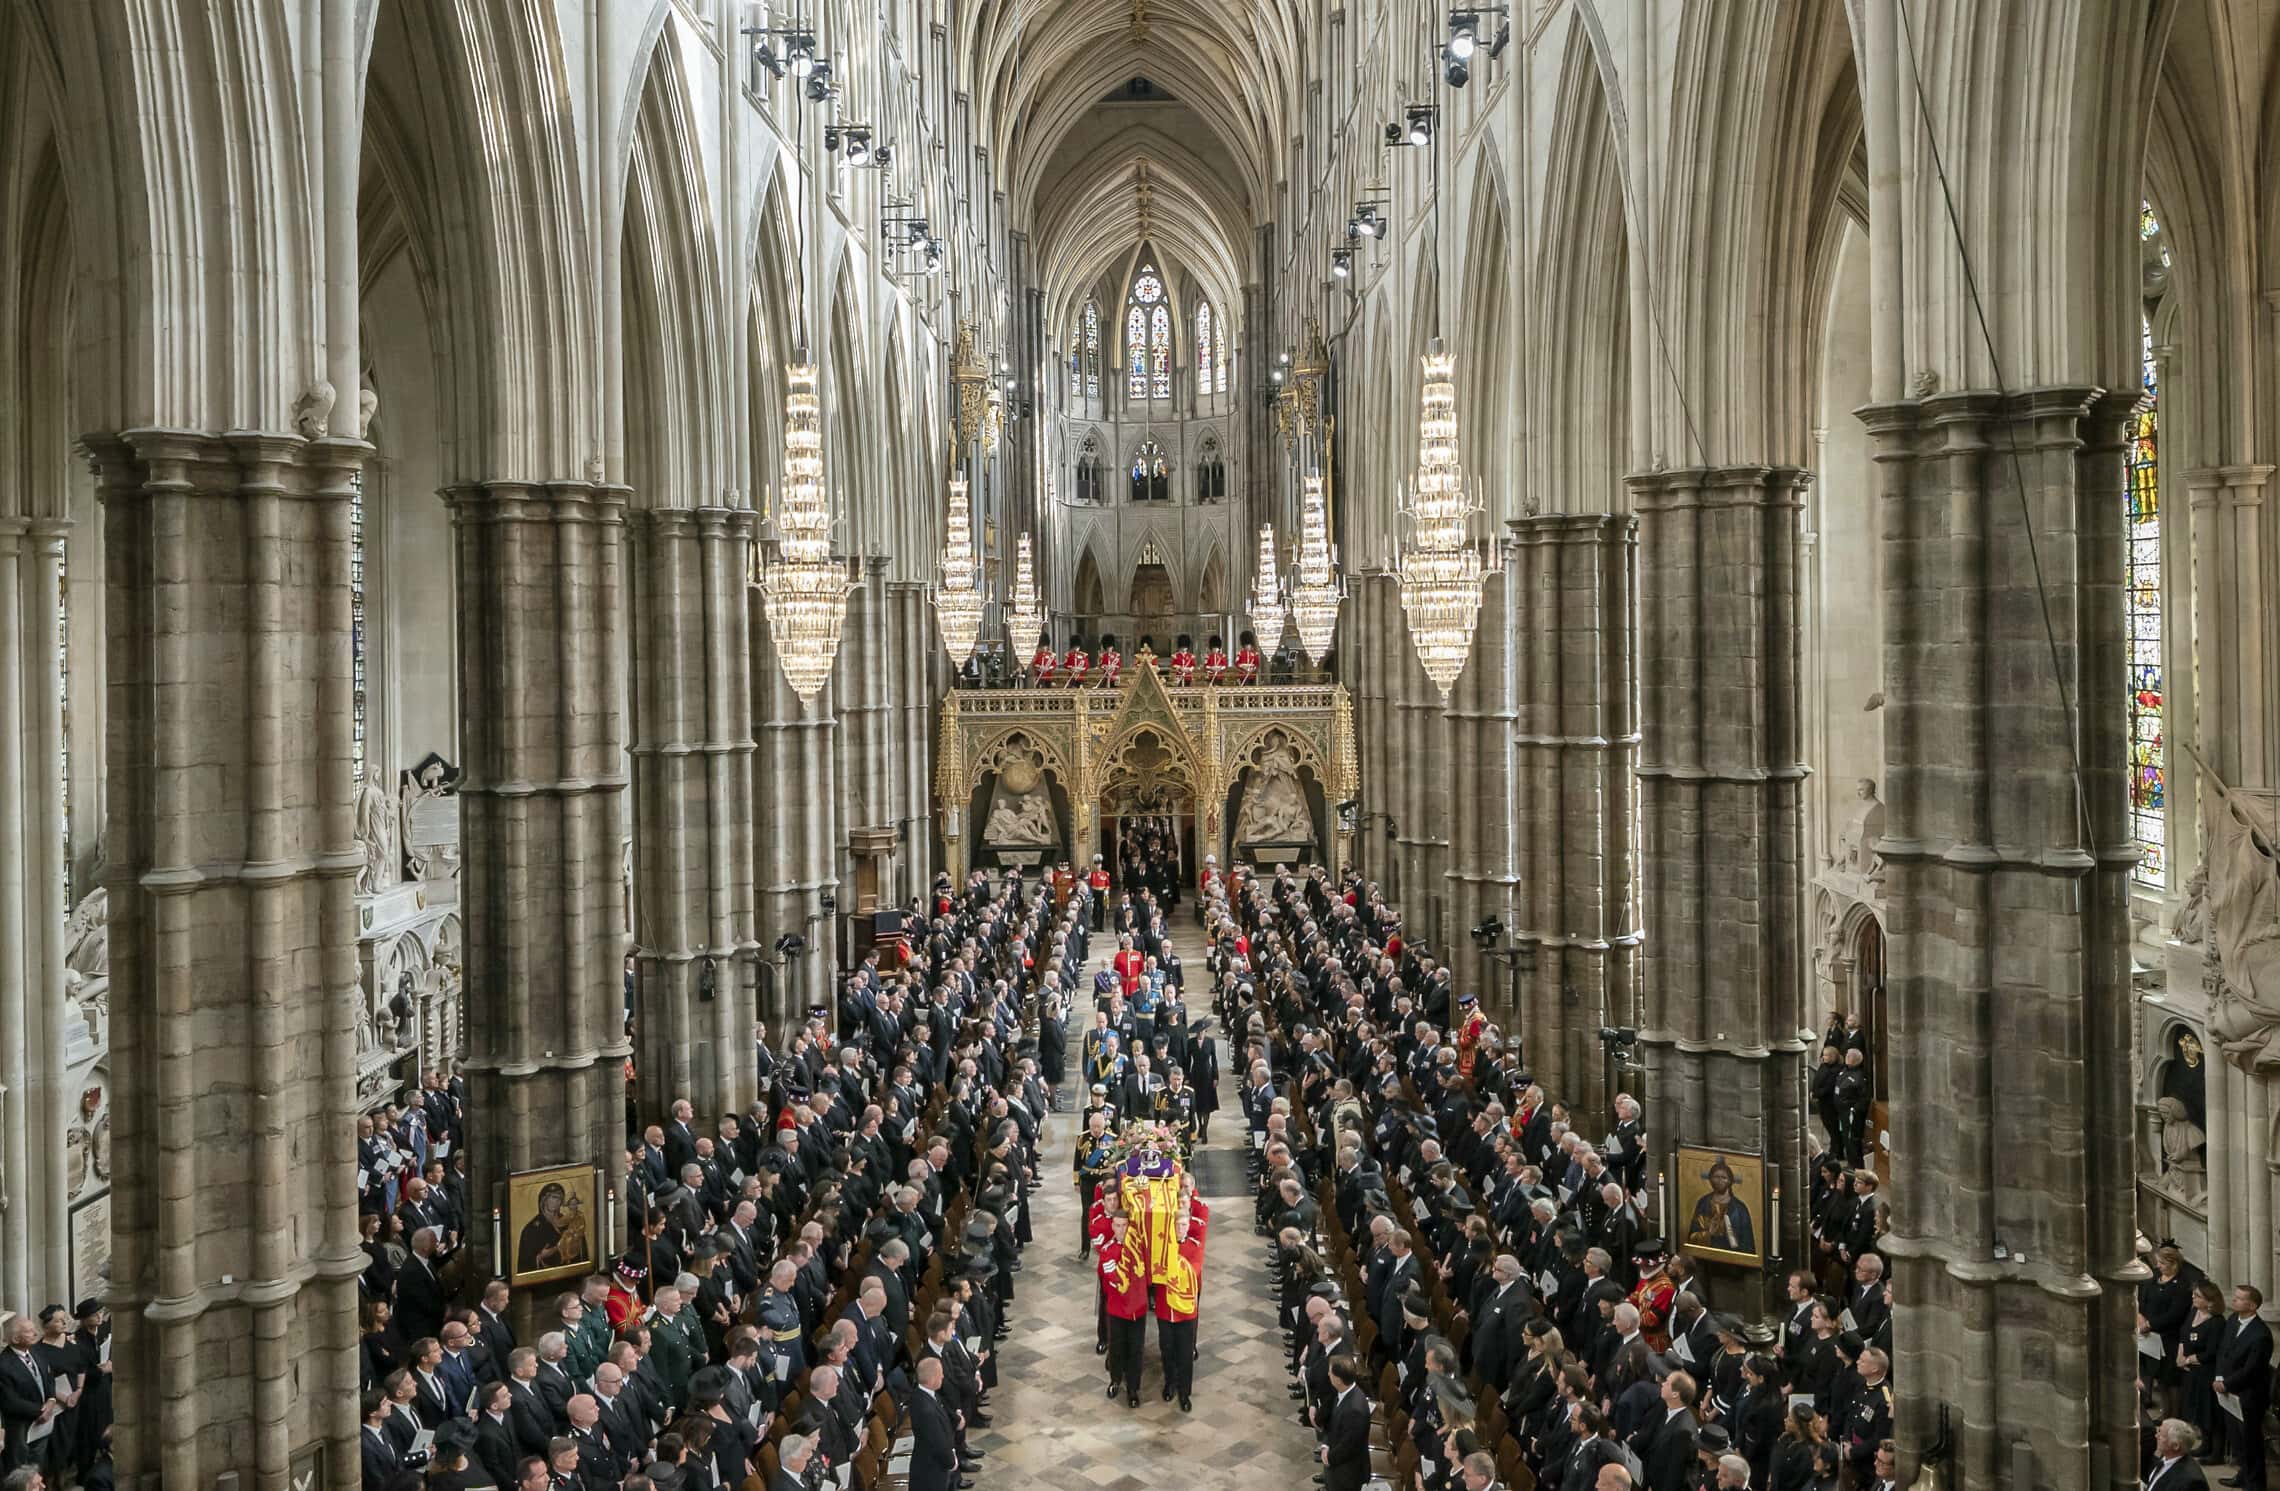 הלווייתה של המלכה אליזבת השנייה בכנסיית וסטמינסטר בלונדון, בריטניה, 19 בספטמבר 2022 (צילום: Danny Lawson/Pool Photo via AP)